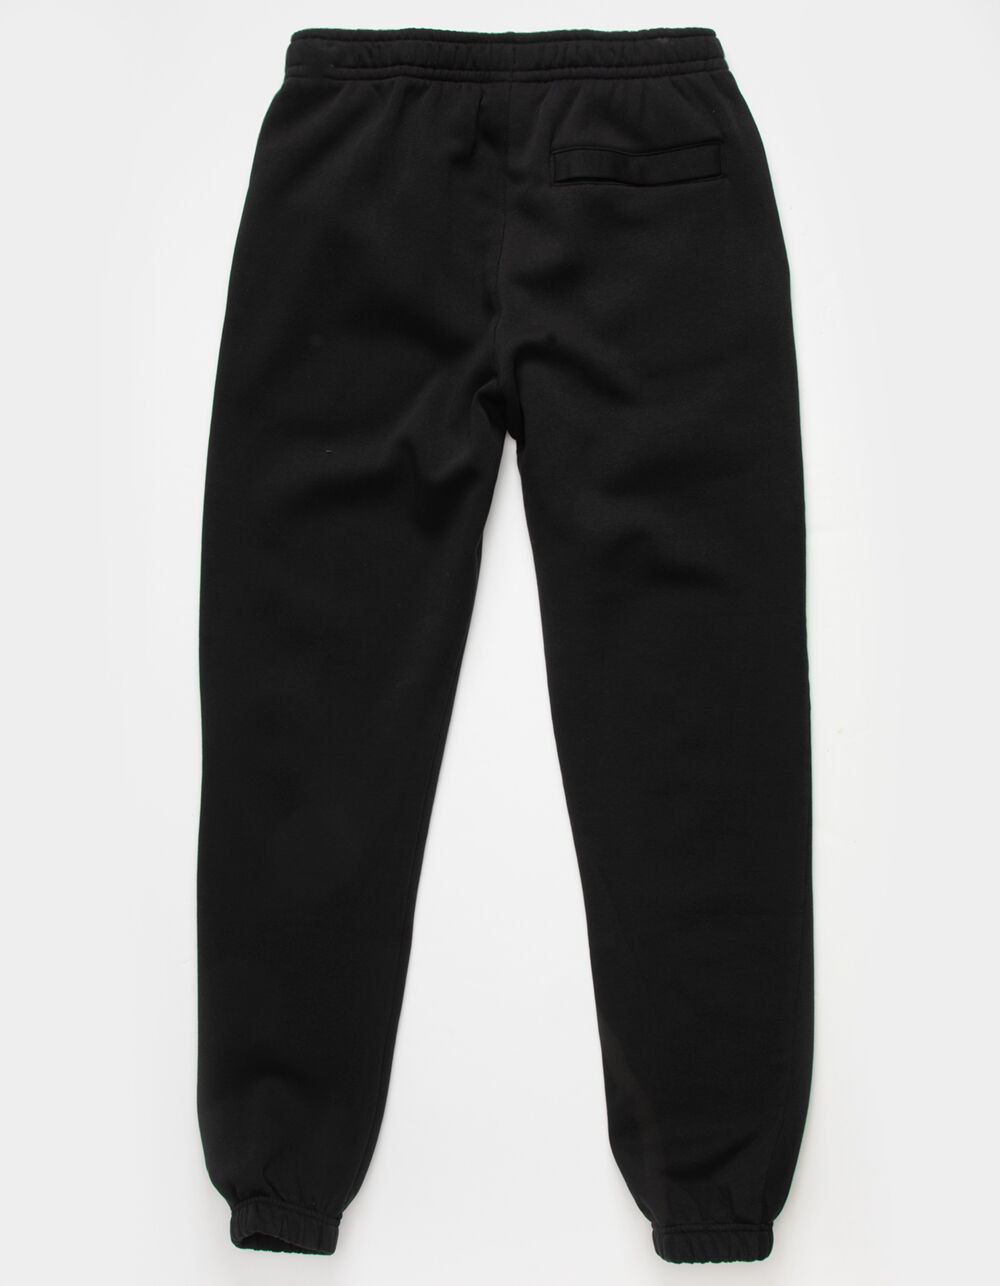 NIKE Sportswear Club Fleece Mens Sweatpants - BLACK